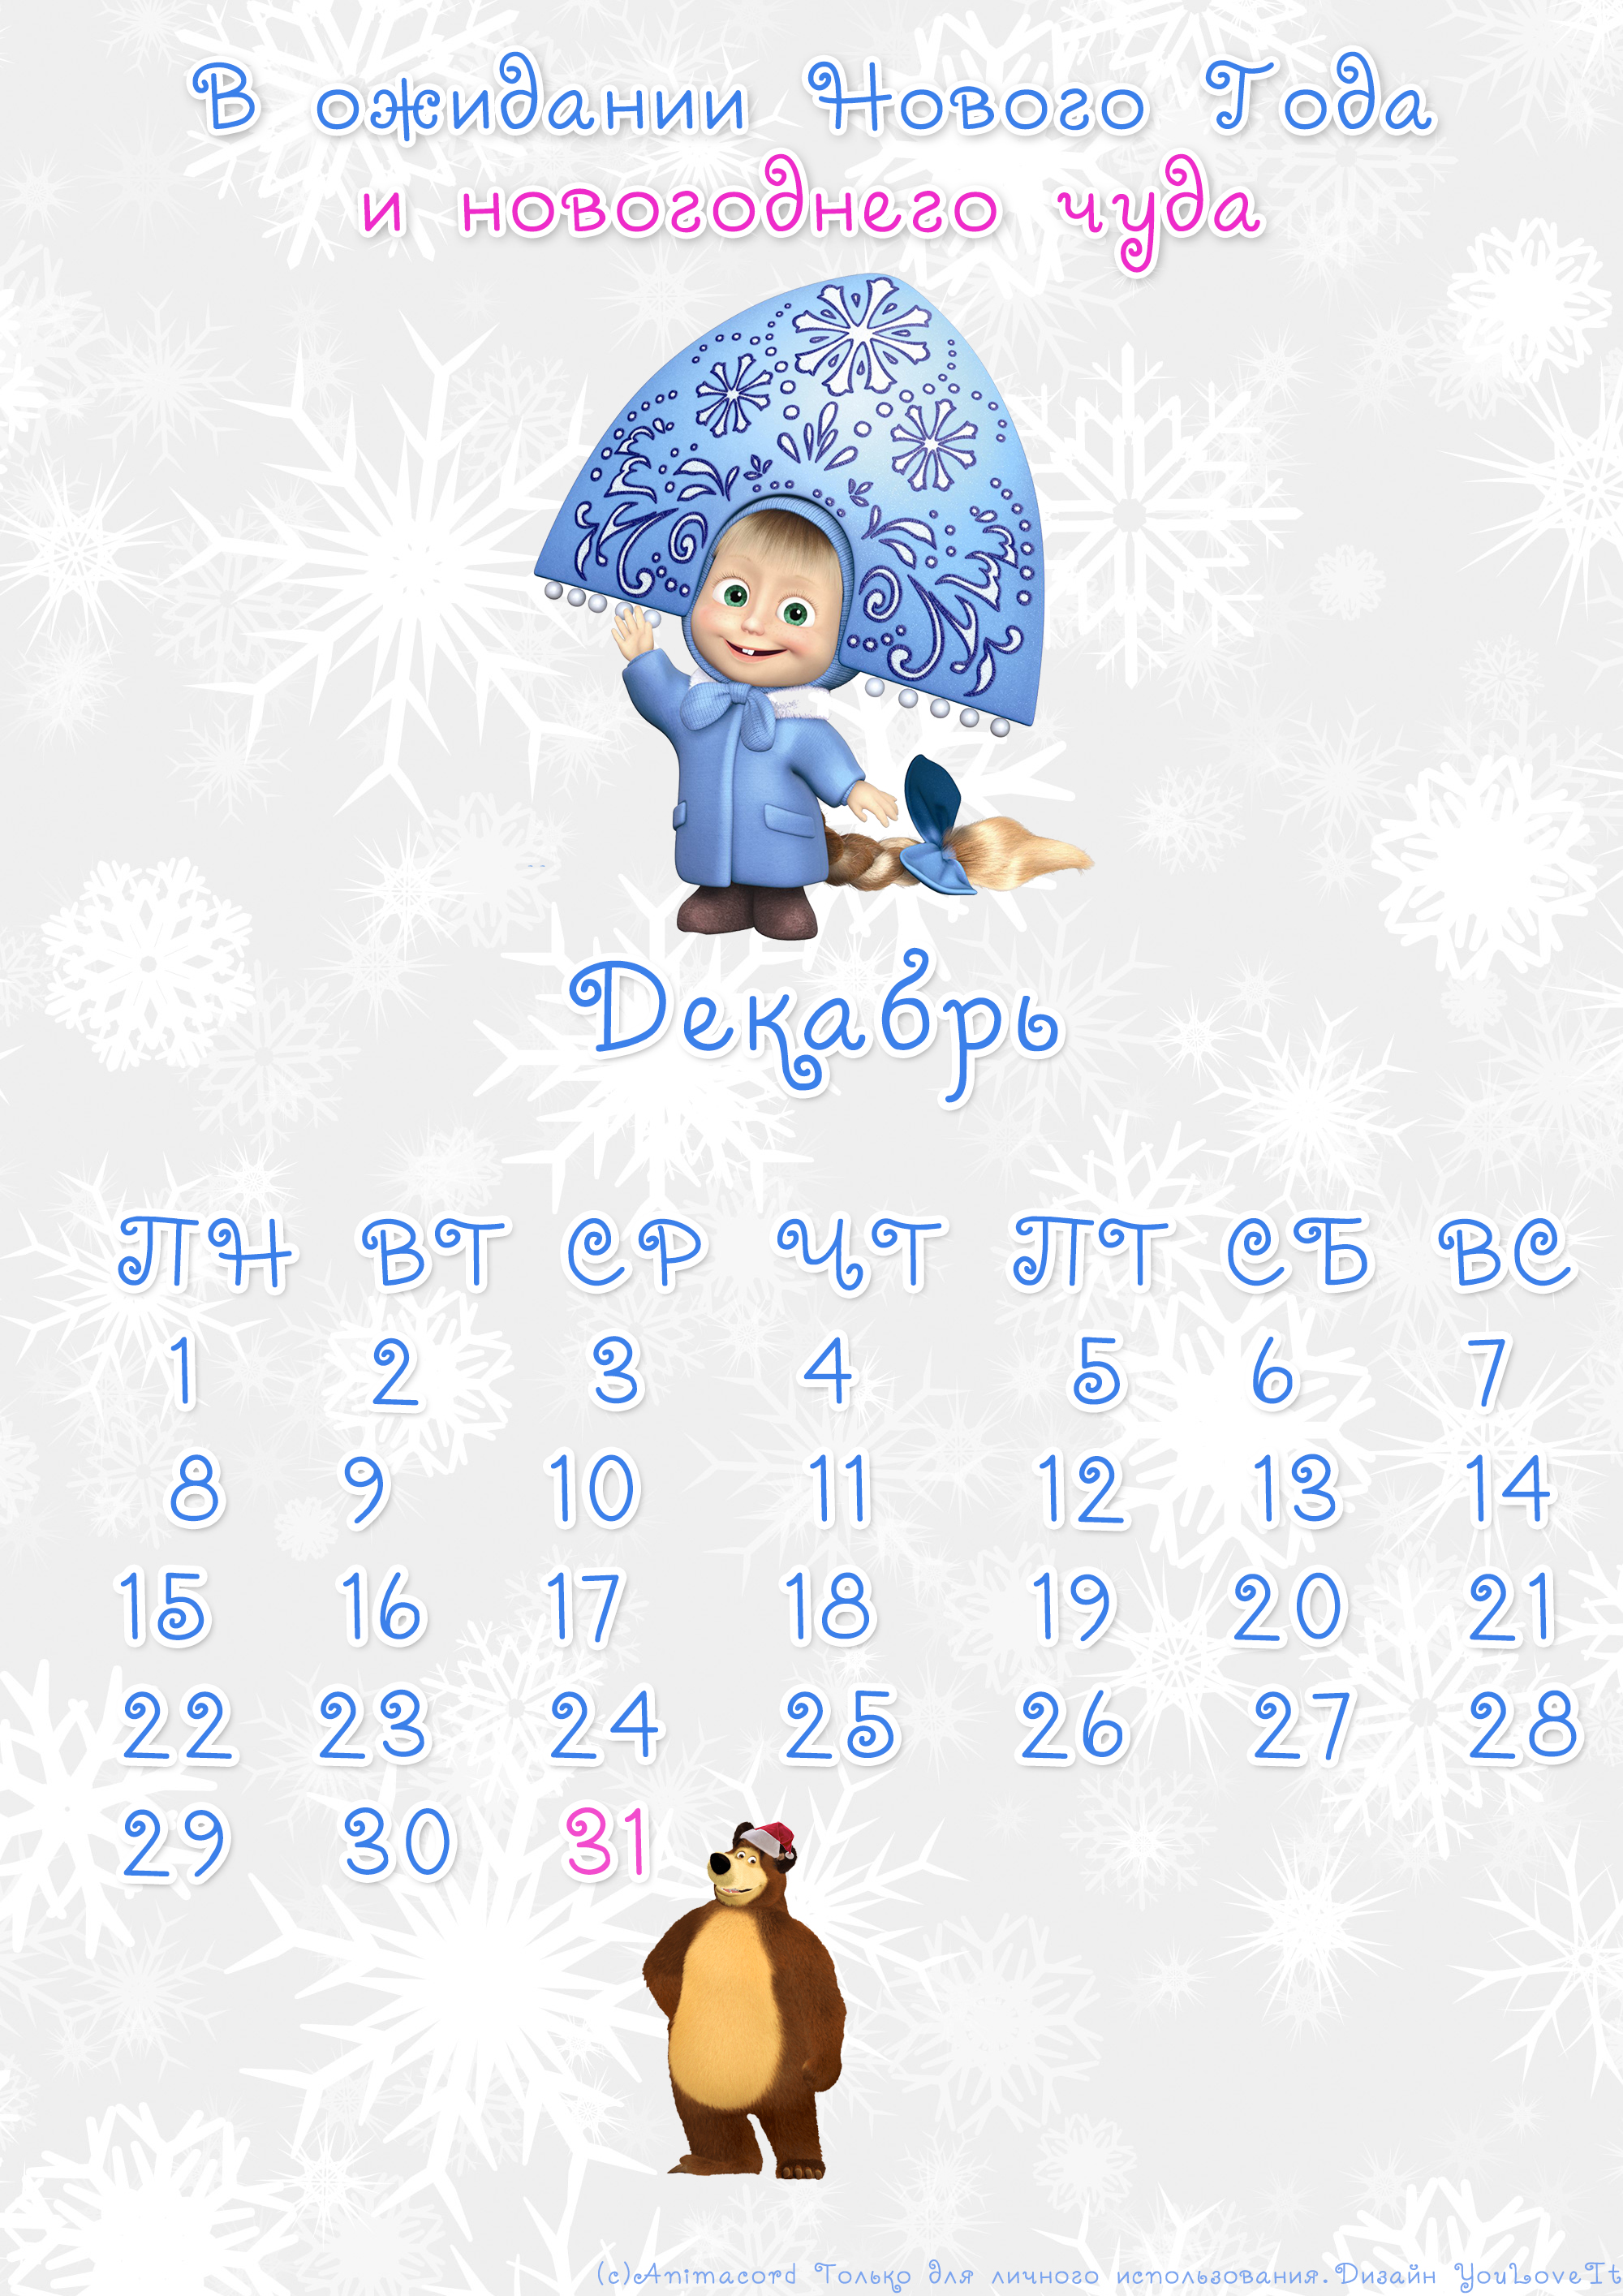 Календари на Декабрь: считаем дни до Нового Года - YouLoveIt.ru